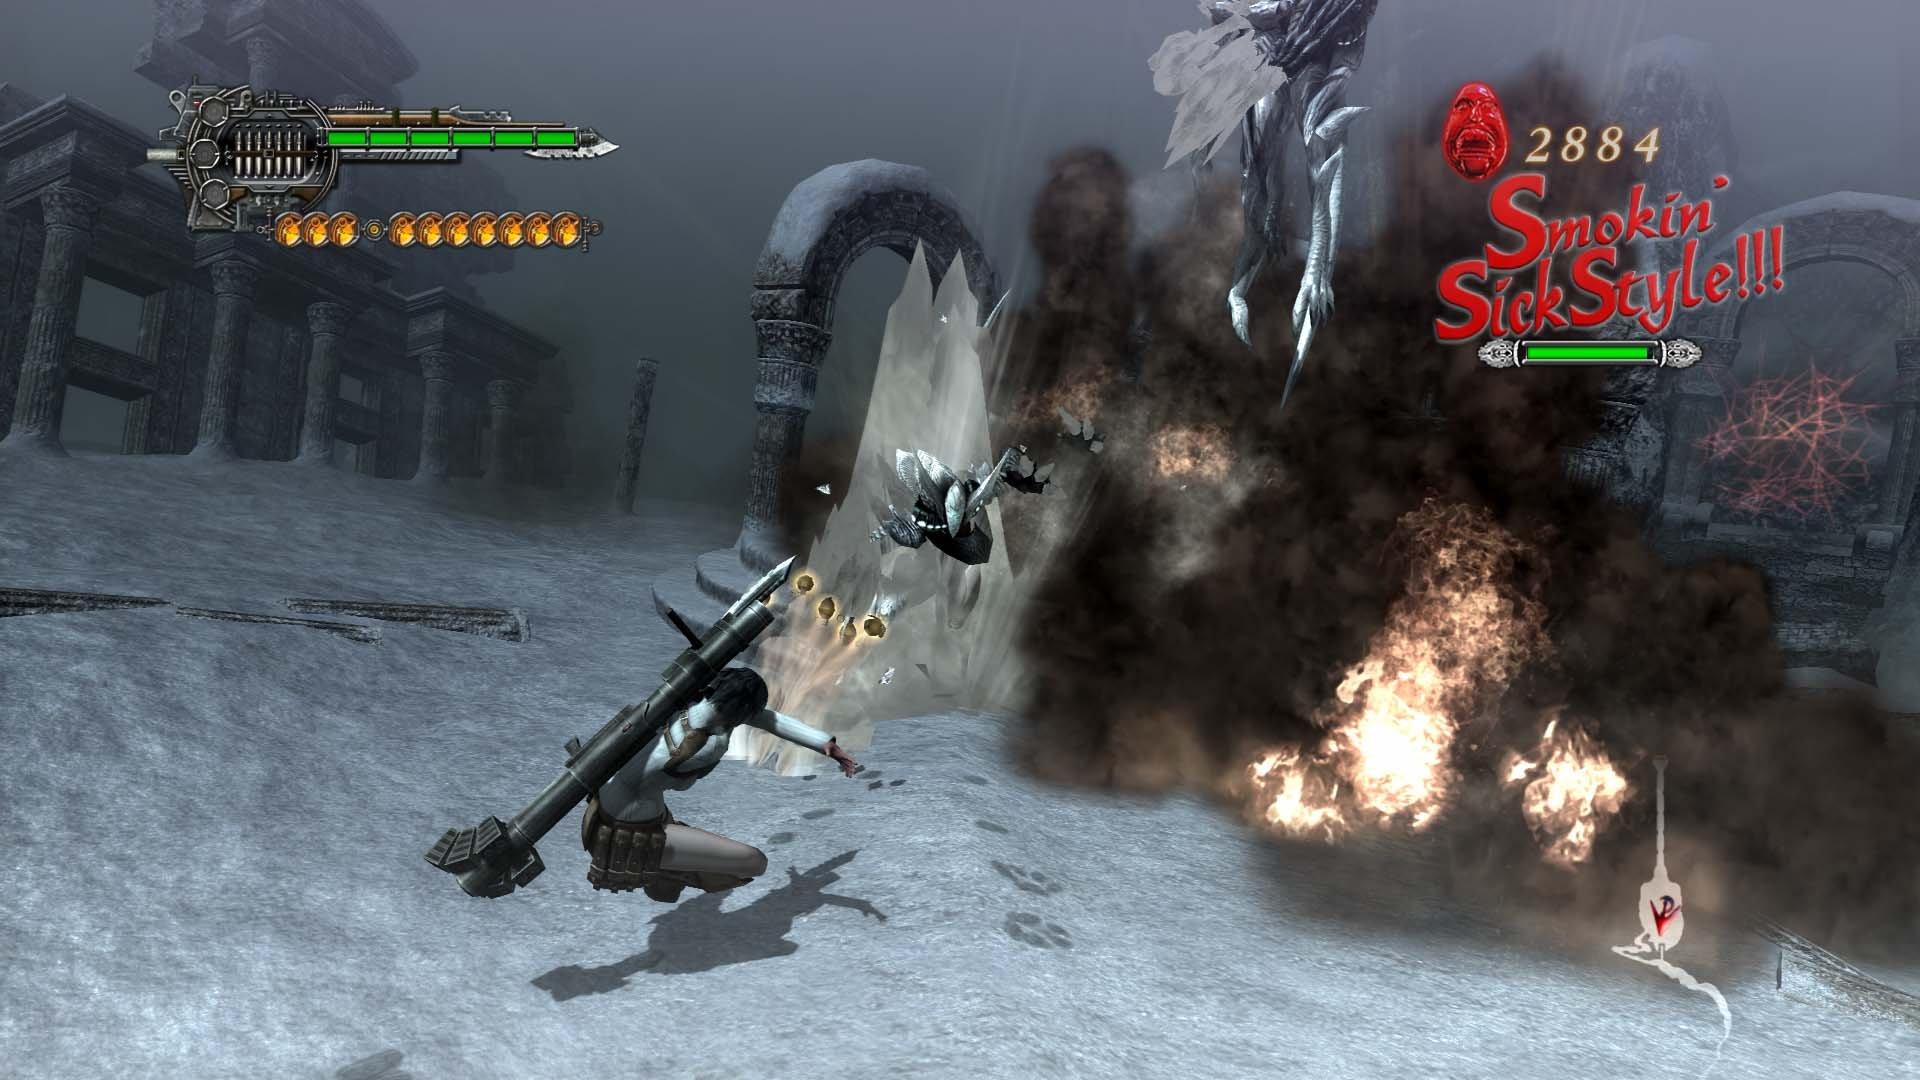 Devil May Cry 4 - PS3 - Game com Café.com